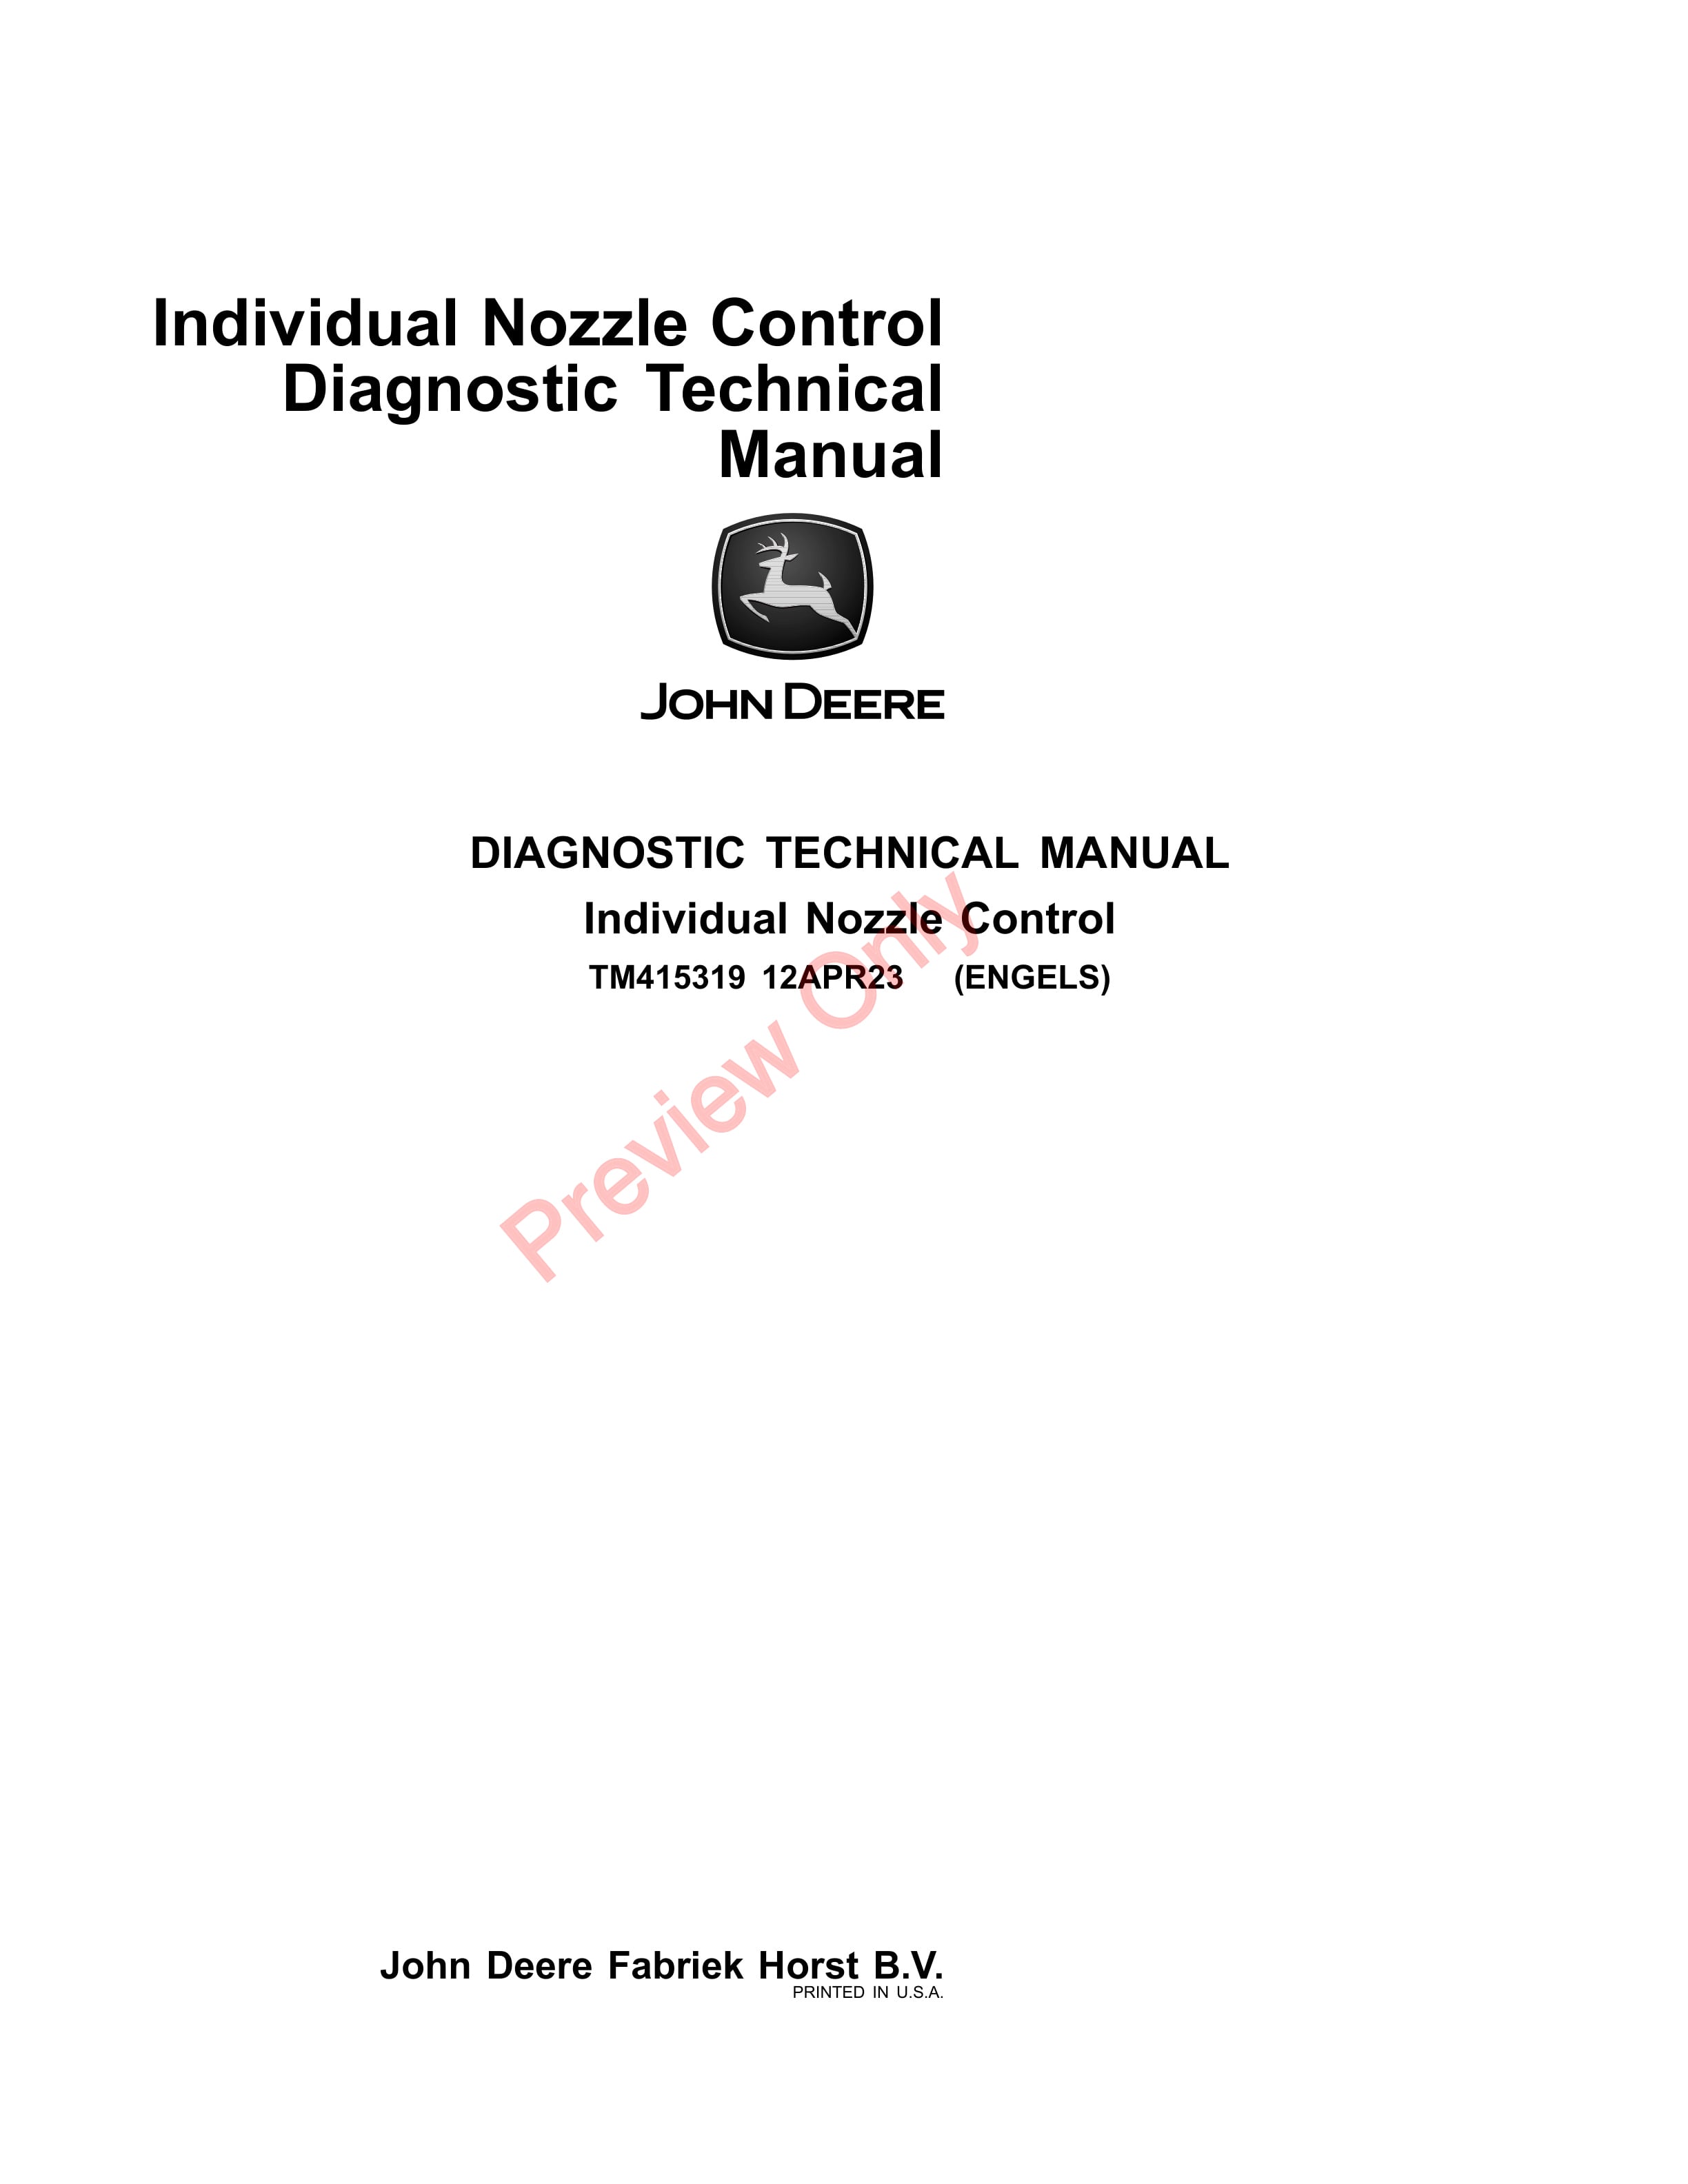 John Deere Individual Nozzle Control Diagnostic Technical Manual TM415319 12APR23-1